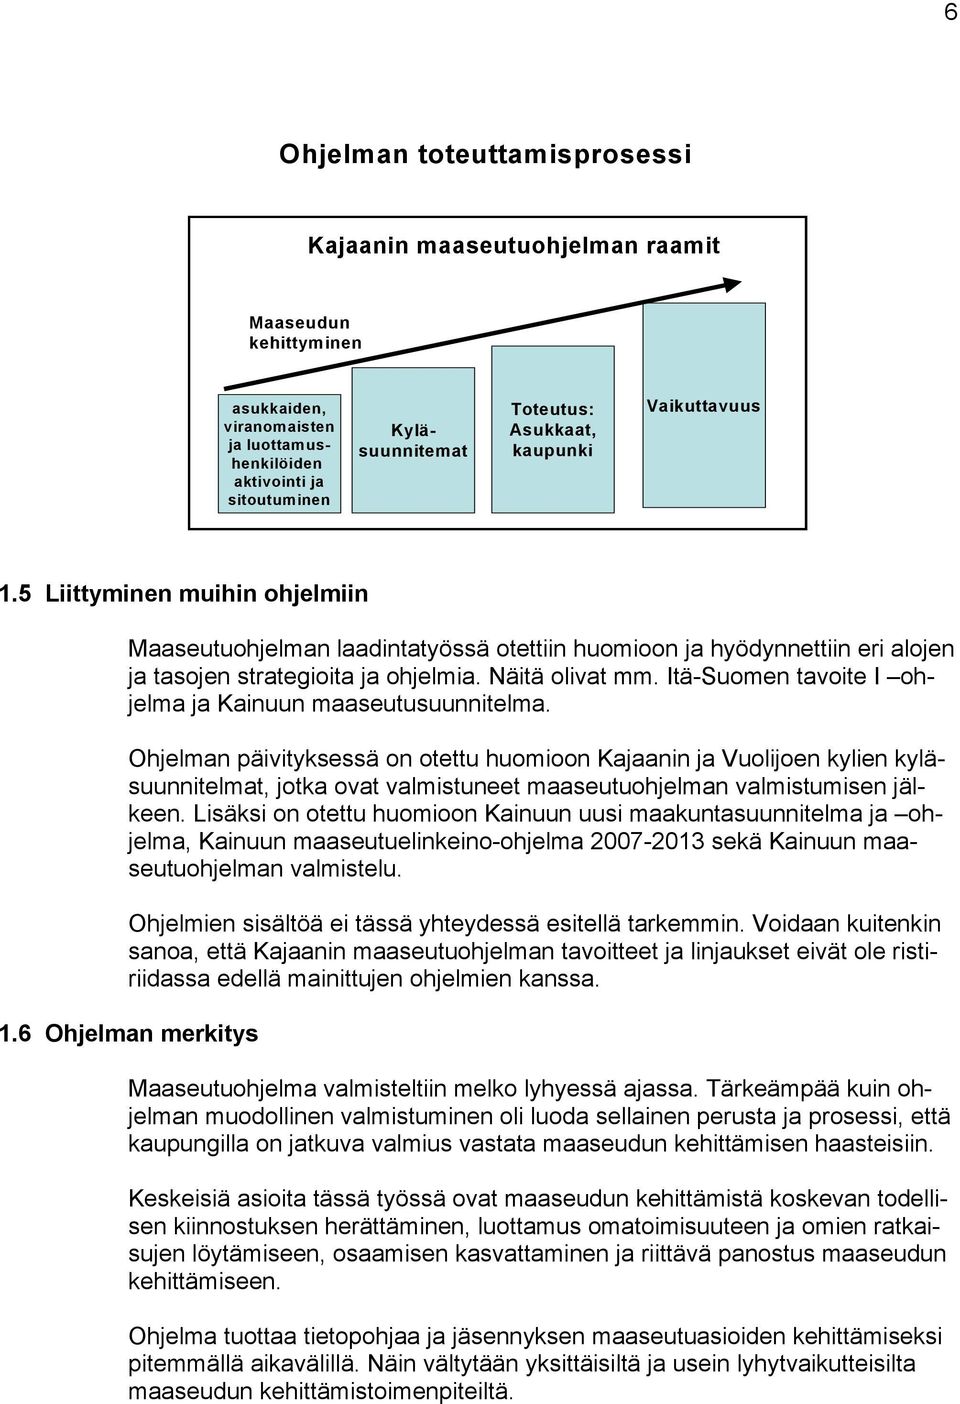 Itä-Suomen tavoite I ohjelma ja Kainuun maaseutusuunnitelma.